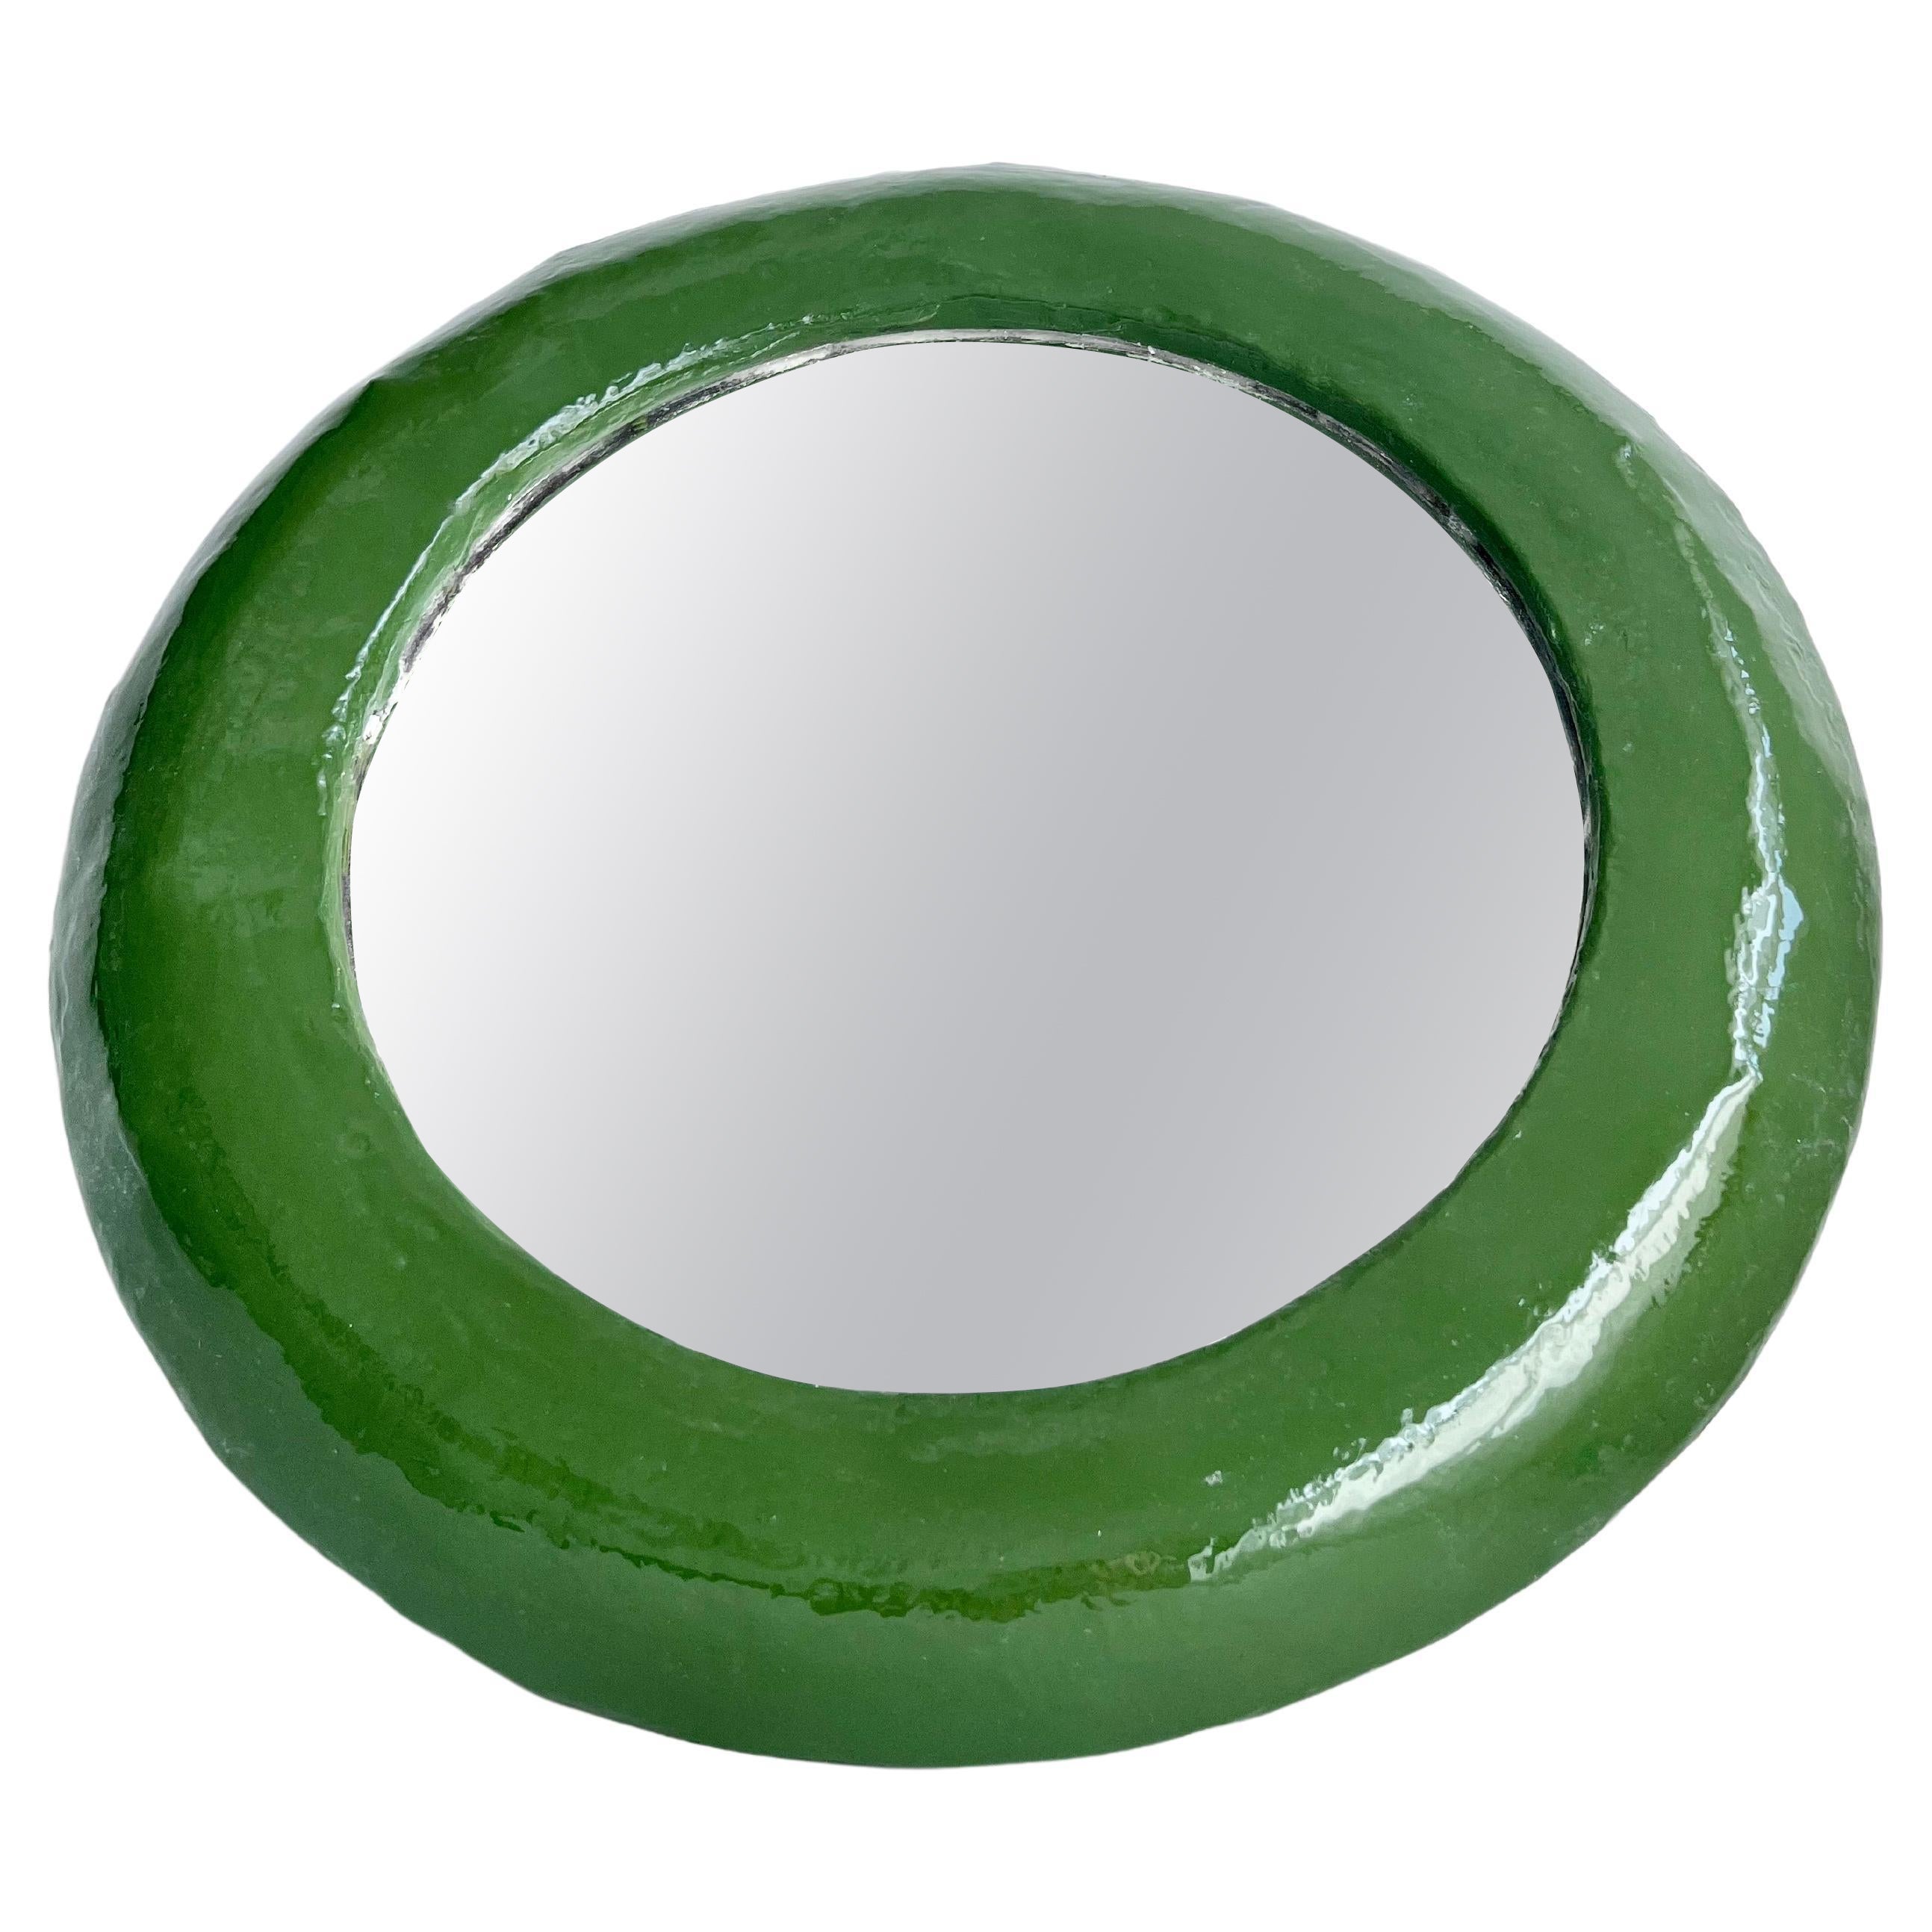 Runder grüner Spiegel von Studio Chora, Medium Wandspiegel, Hochglanz, Vorrätig